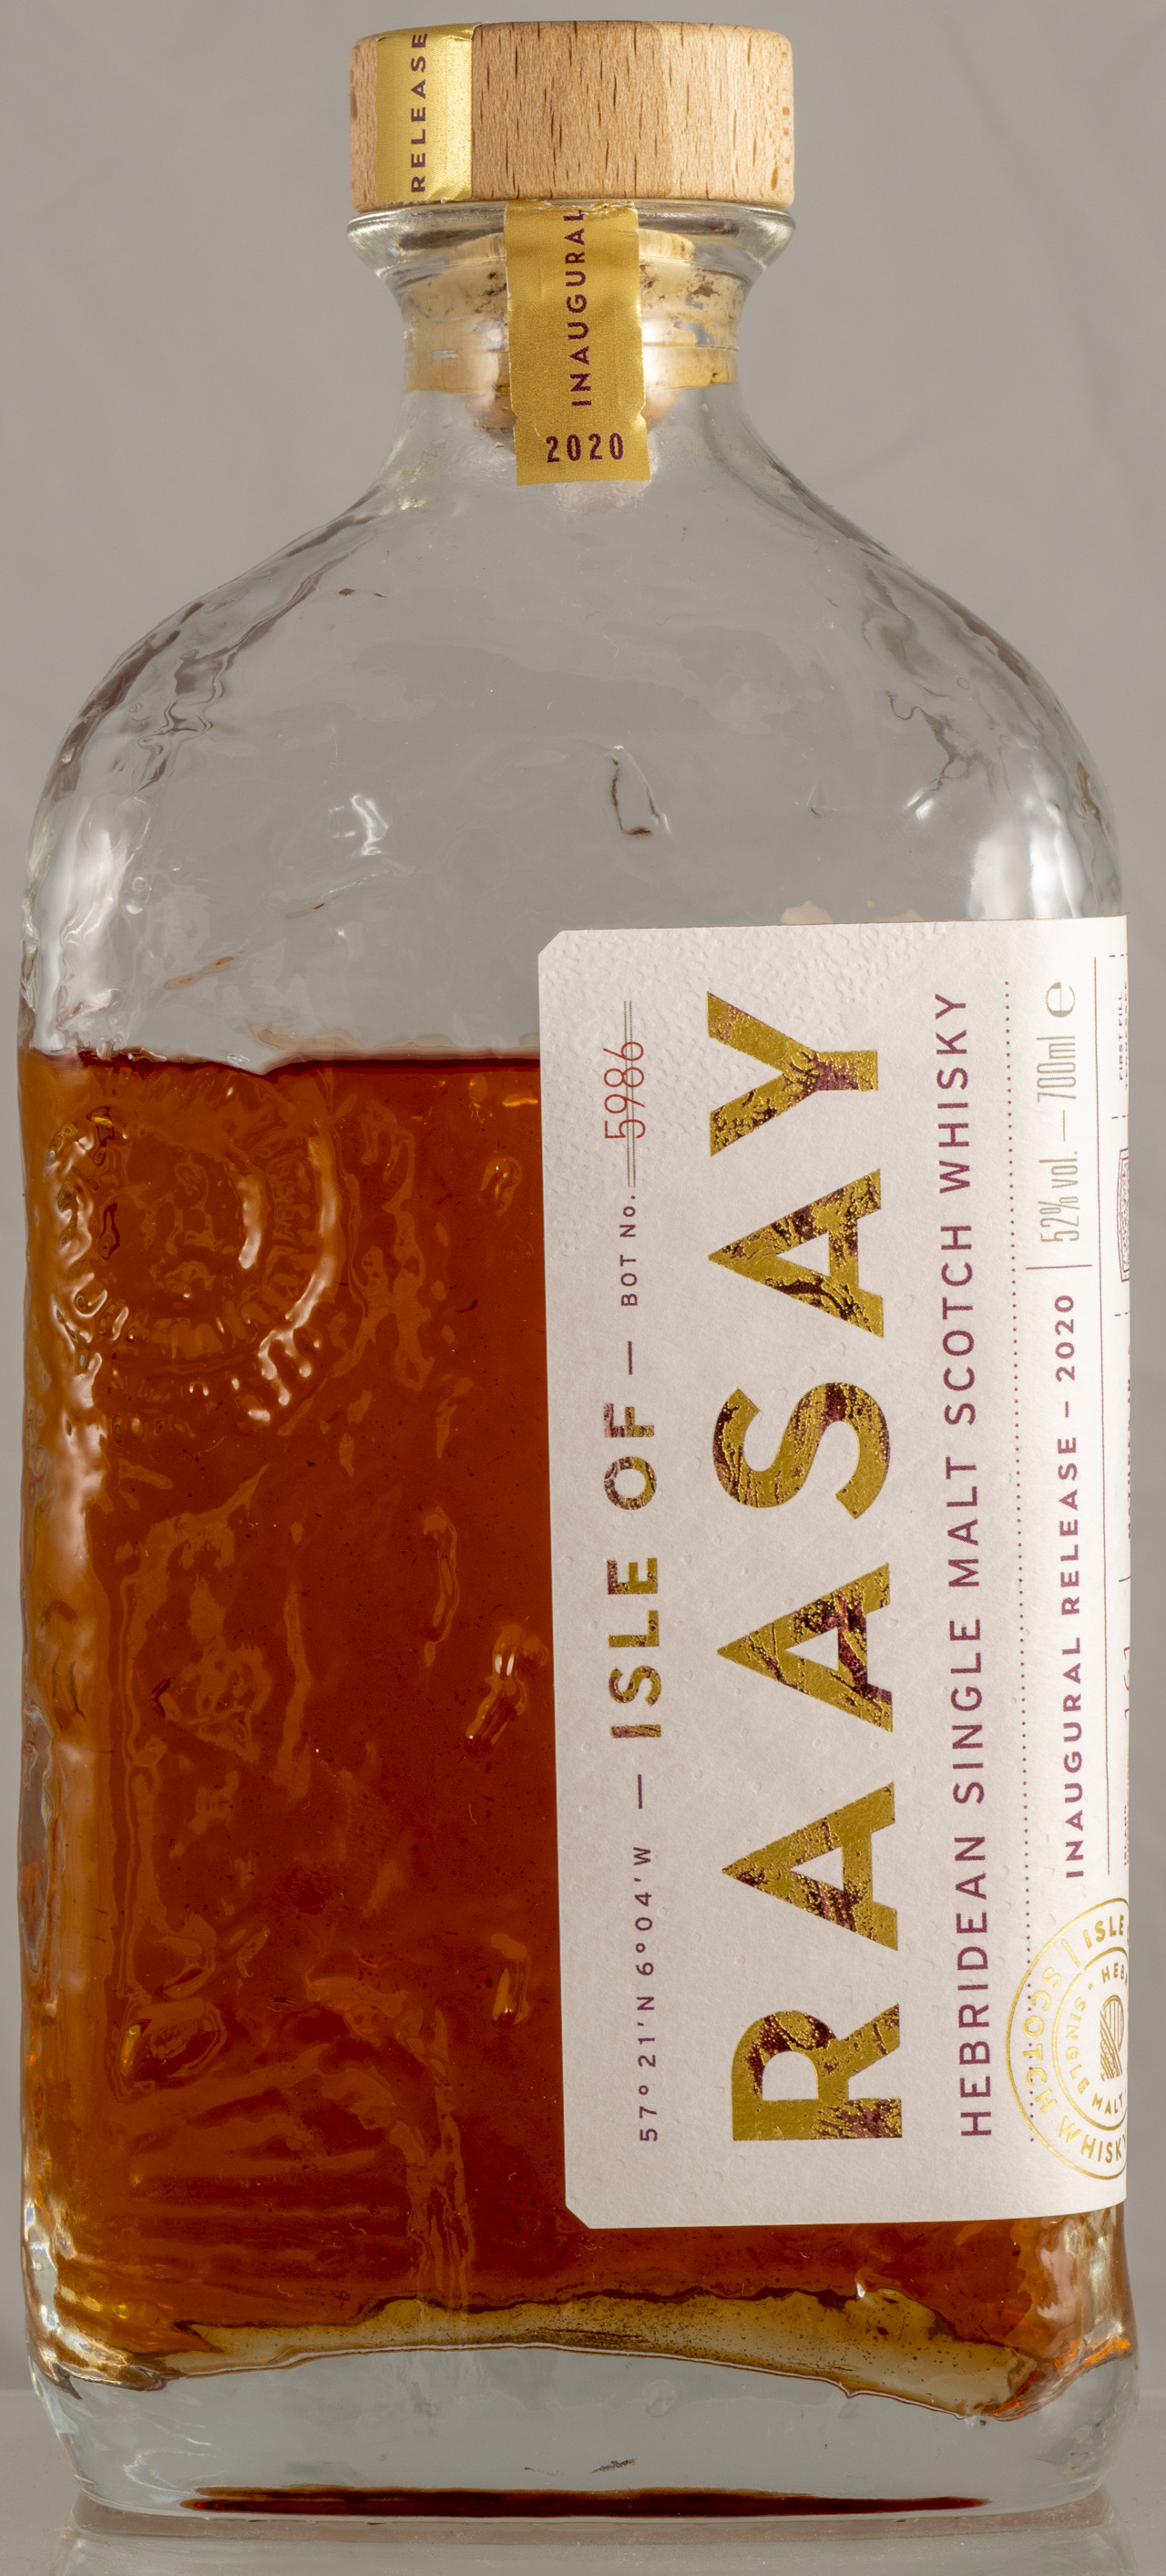 Billede: PHC_6051 - Isle of Raasay - Inaugural Release 2020 - bottle front.jpg